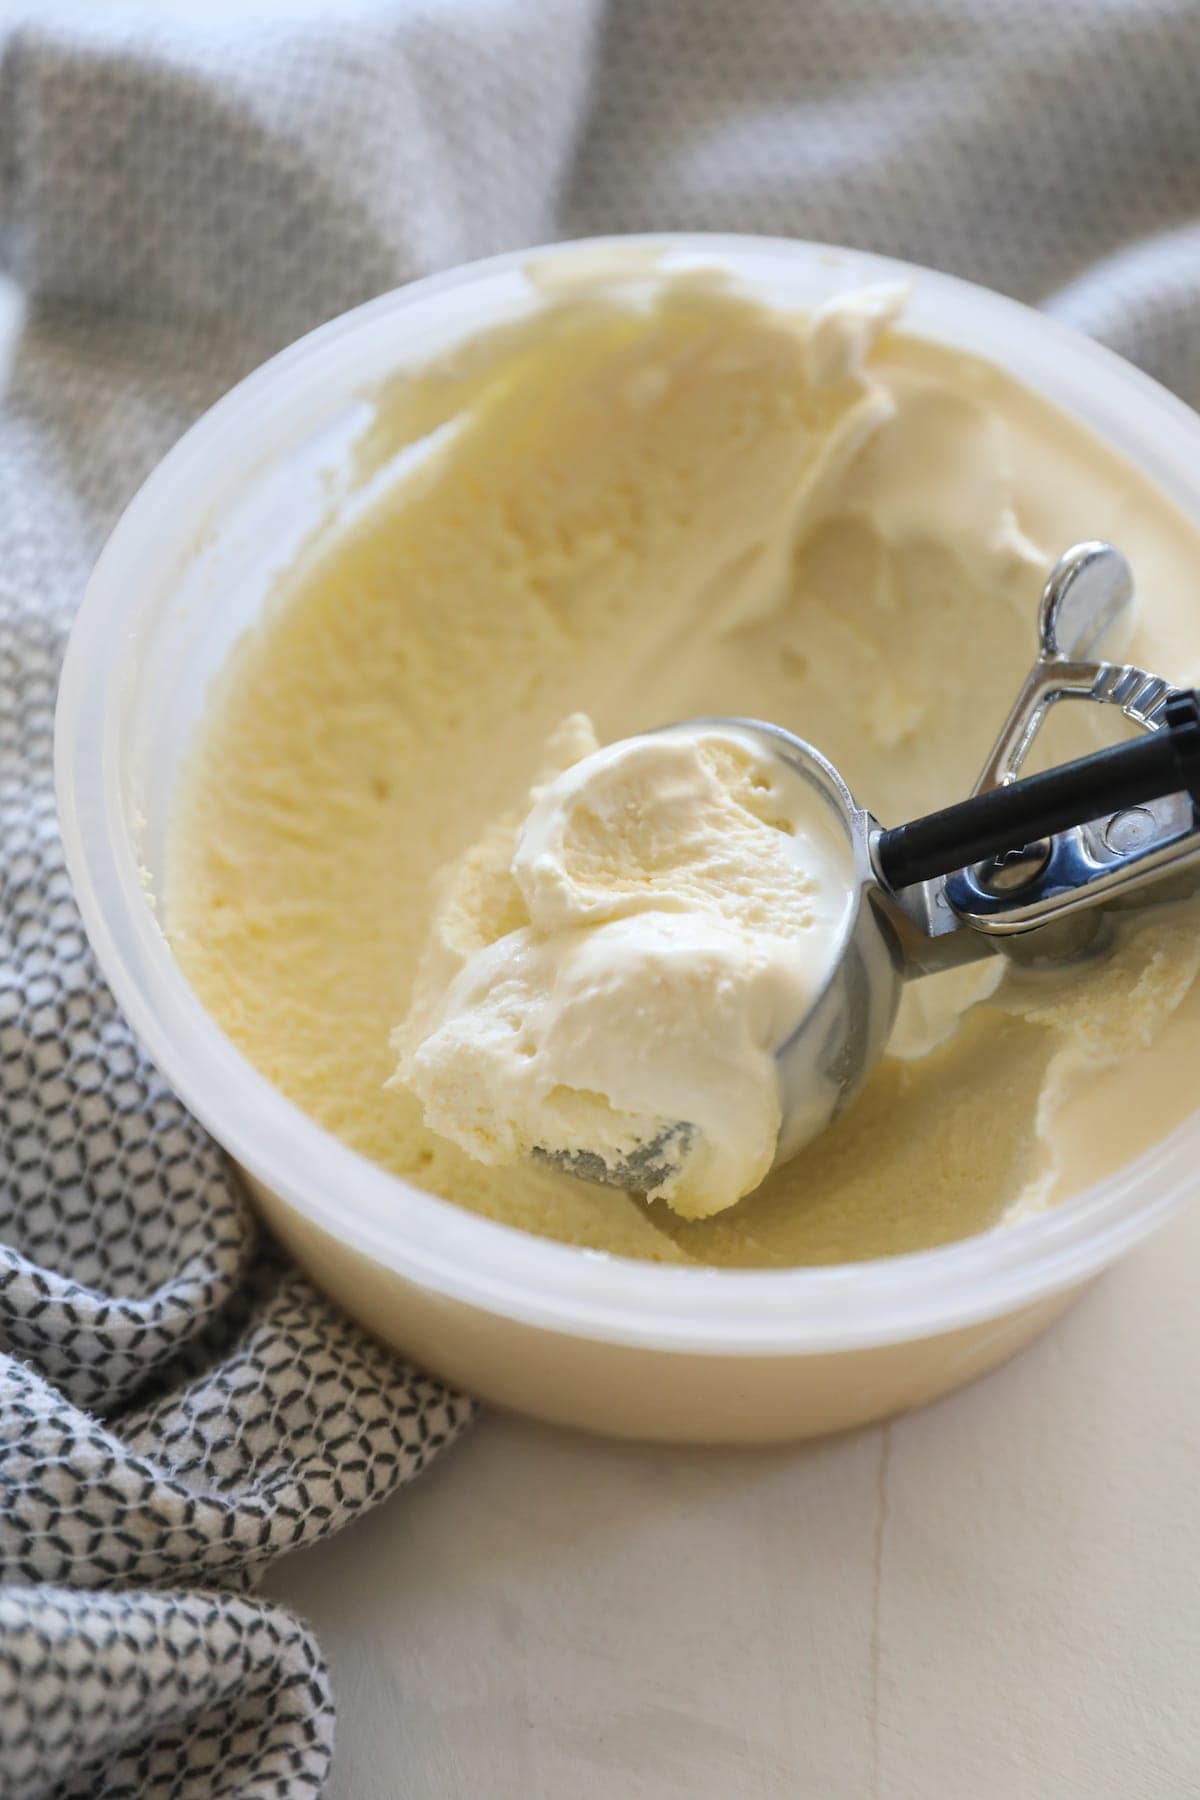 scoop of vanilla ice cream sitting in container of ice cream